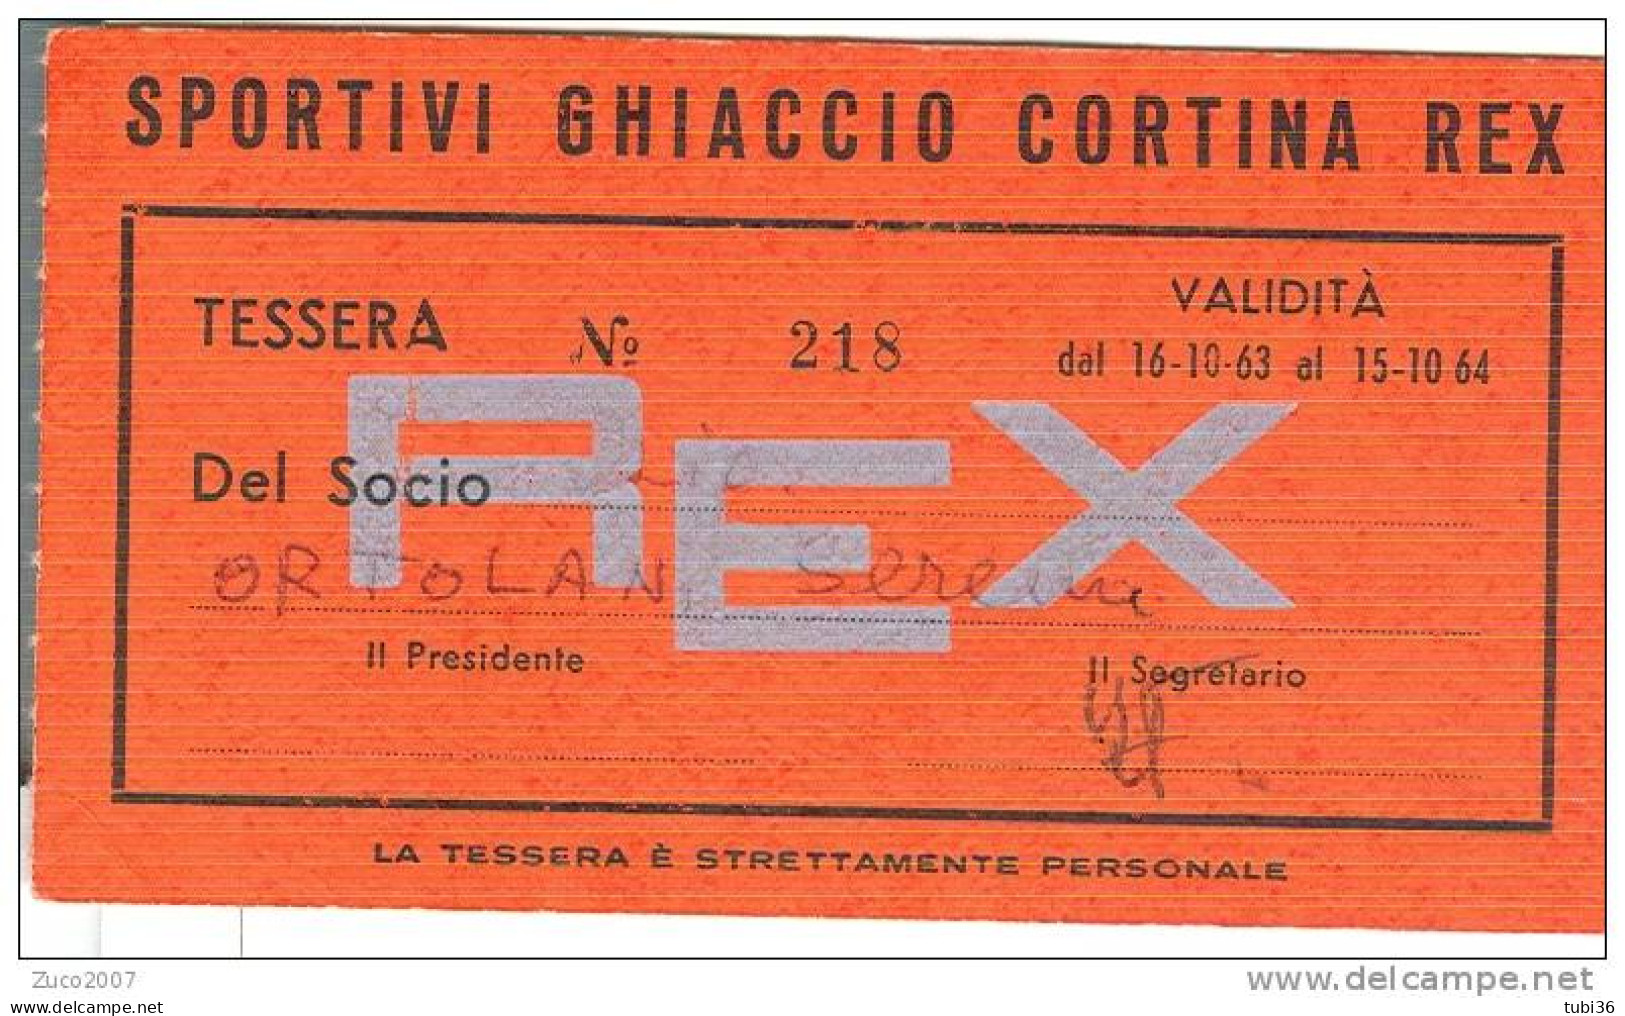 SPORTIVI GHIACCIO CORTINA REX, TESSERA  VALIDITA  1963-1964, - 1960-1969